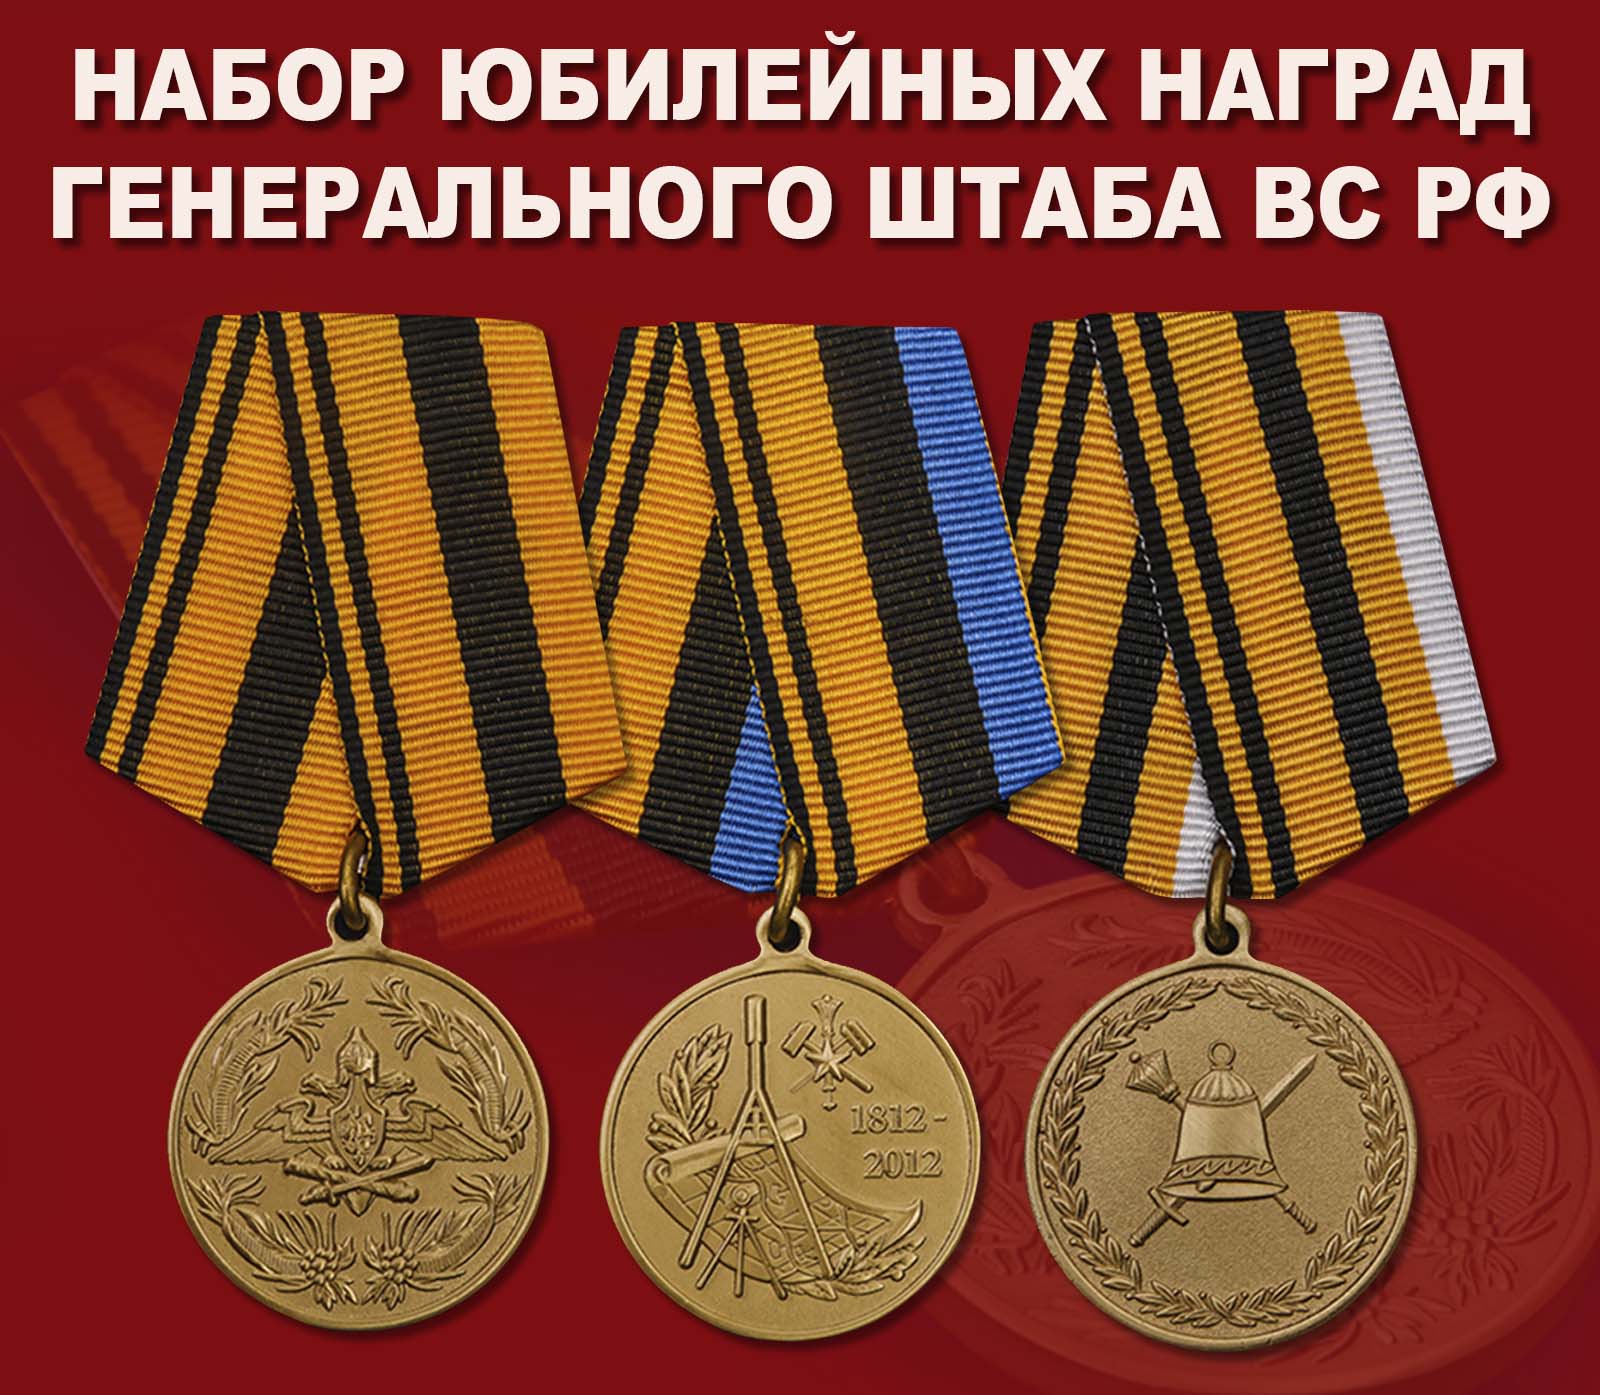 Купить набор юбилейных медалей Генерального штаба ВС РФ